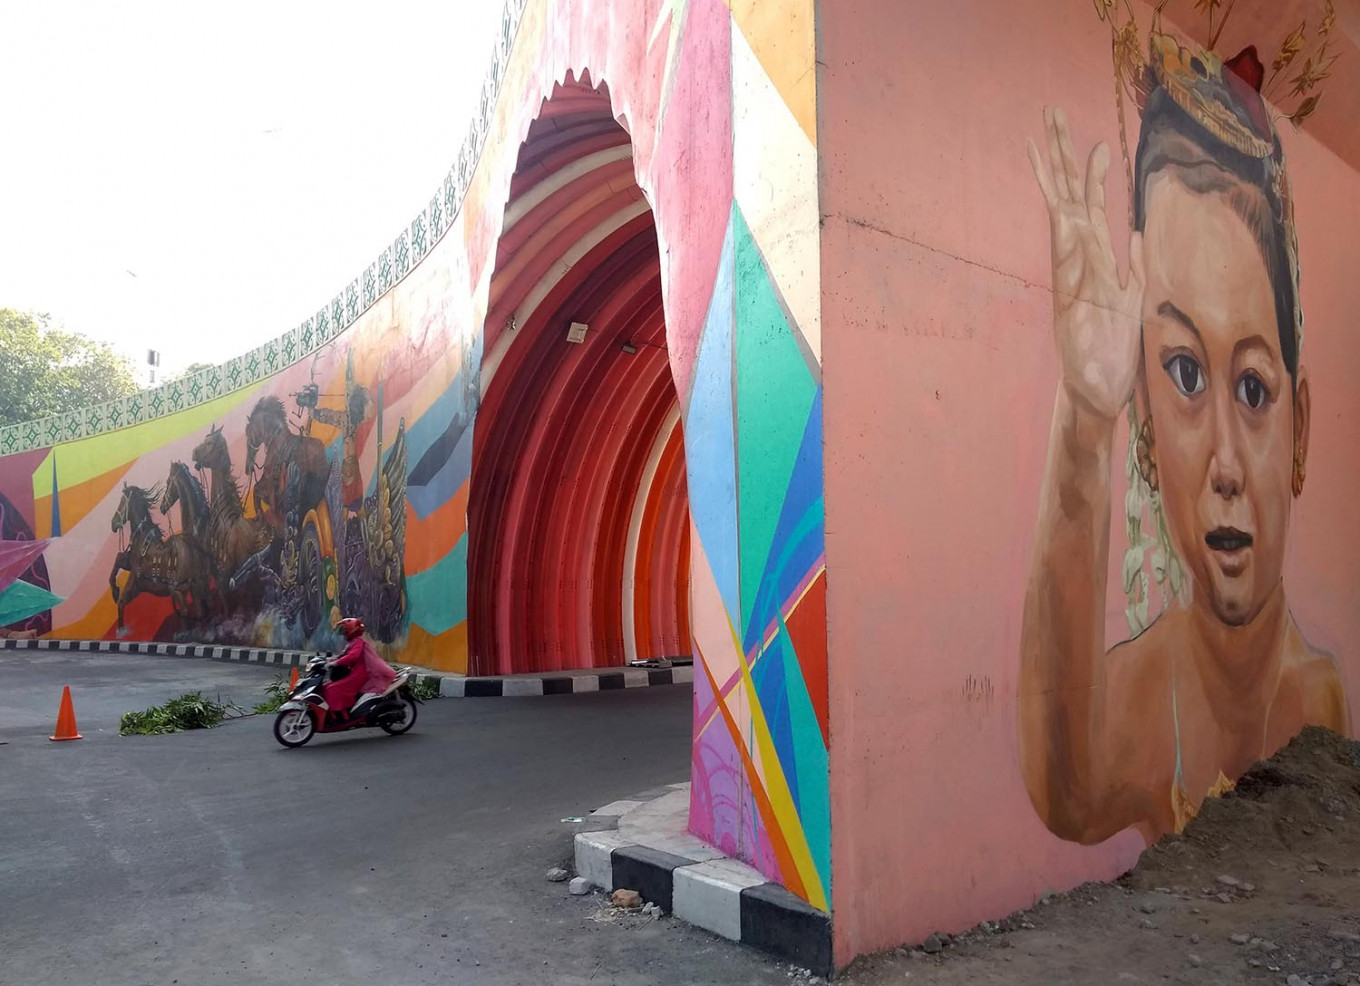 Jalan layang Manahan yang kini dihiasi mural | Foto: Ganug Adi Nugroho / Jakarta Post